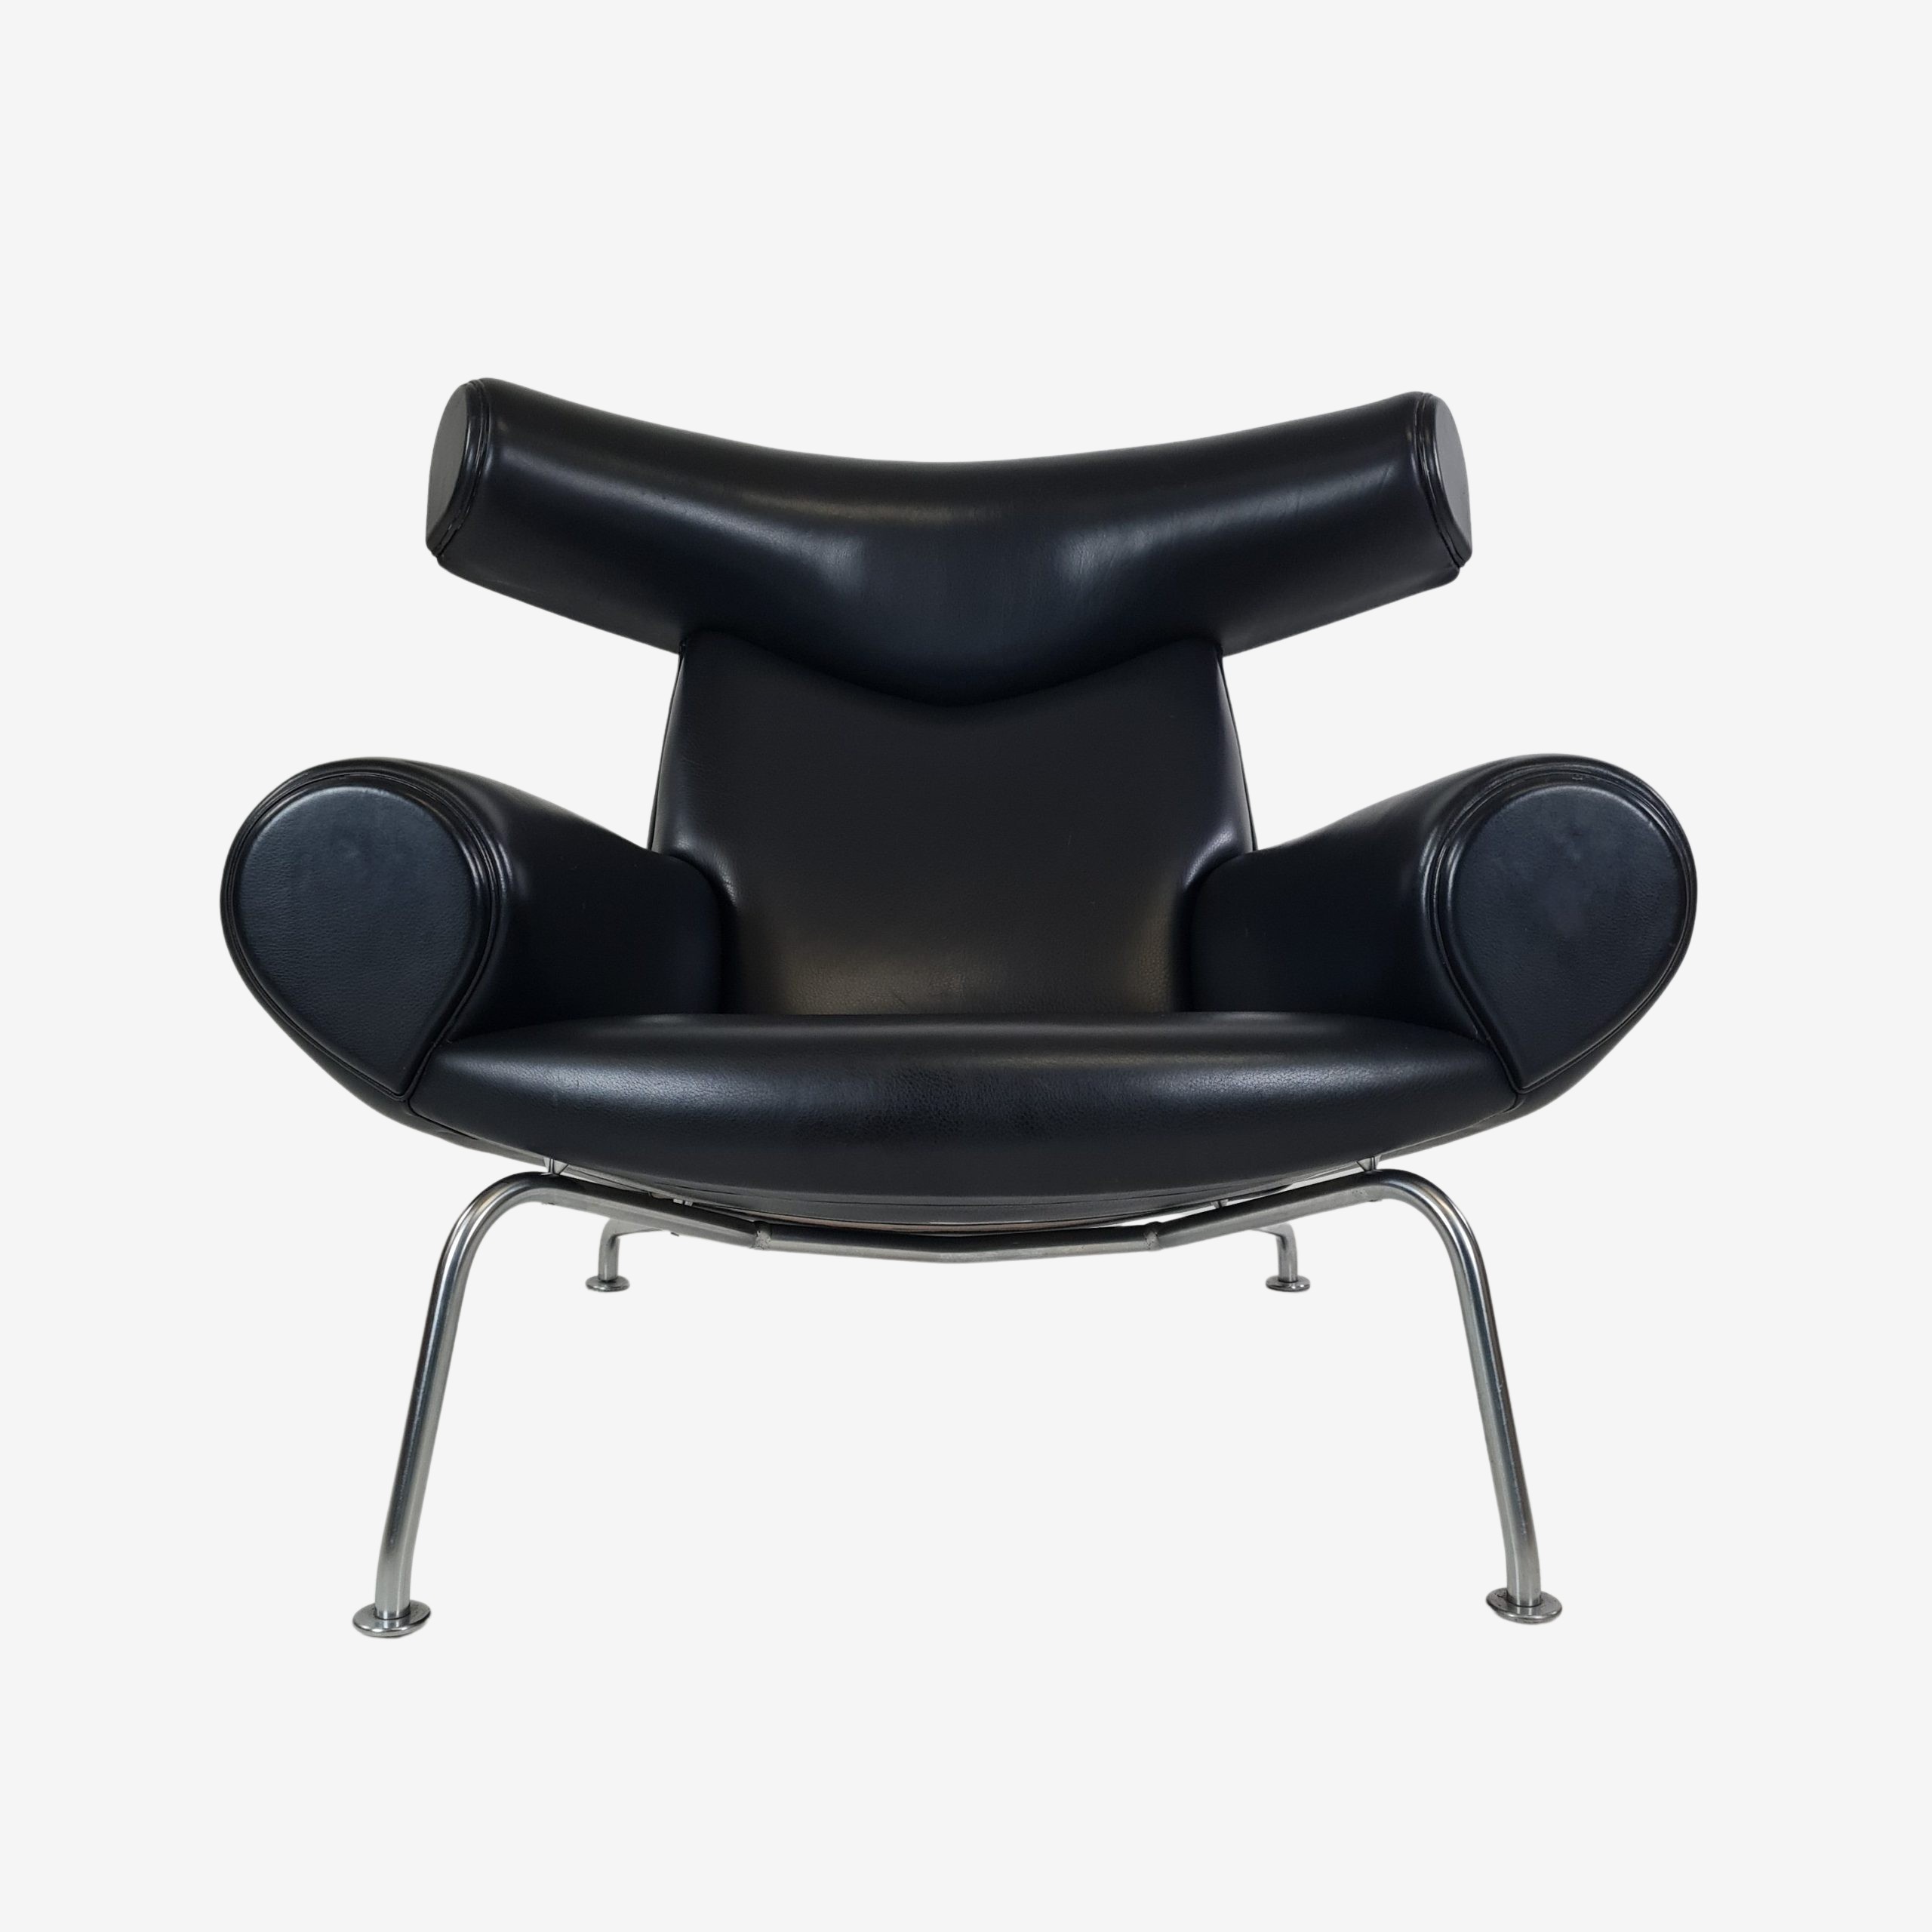 Ox Chair with stool | Hans Jørgen Wegner | Erik Jørgensen Furniture Factory